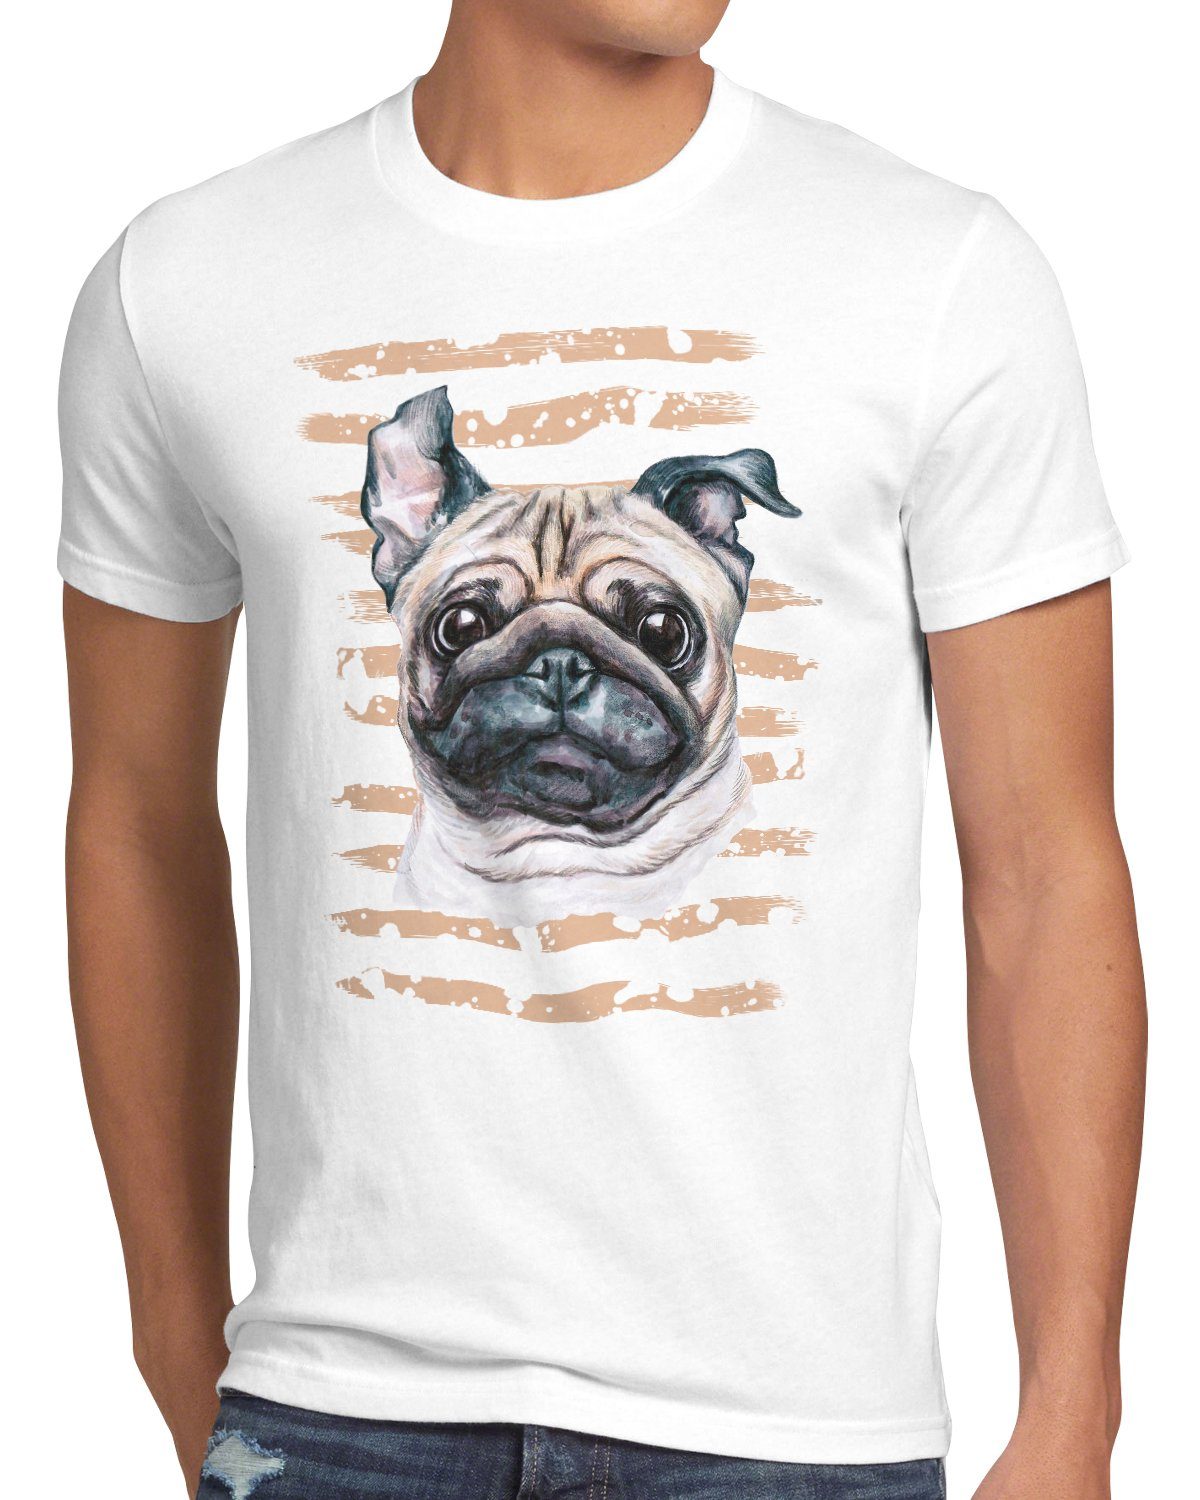 Print-Shirt züchter hundeliebhaber Herren Mops style3 sommer T-Shirt